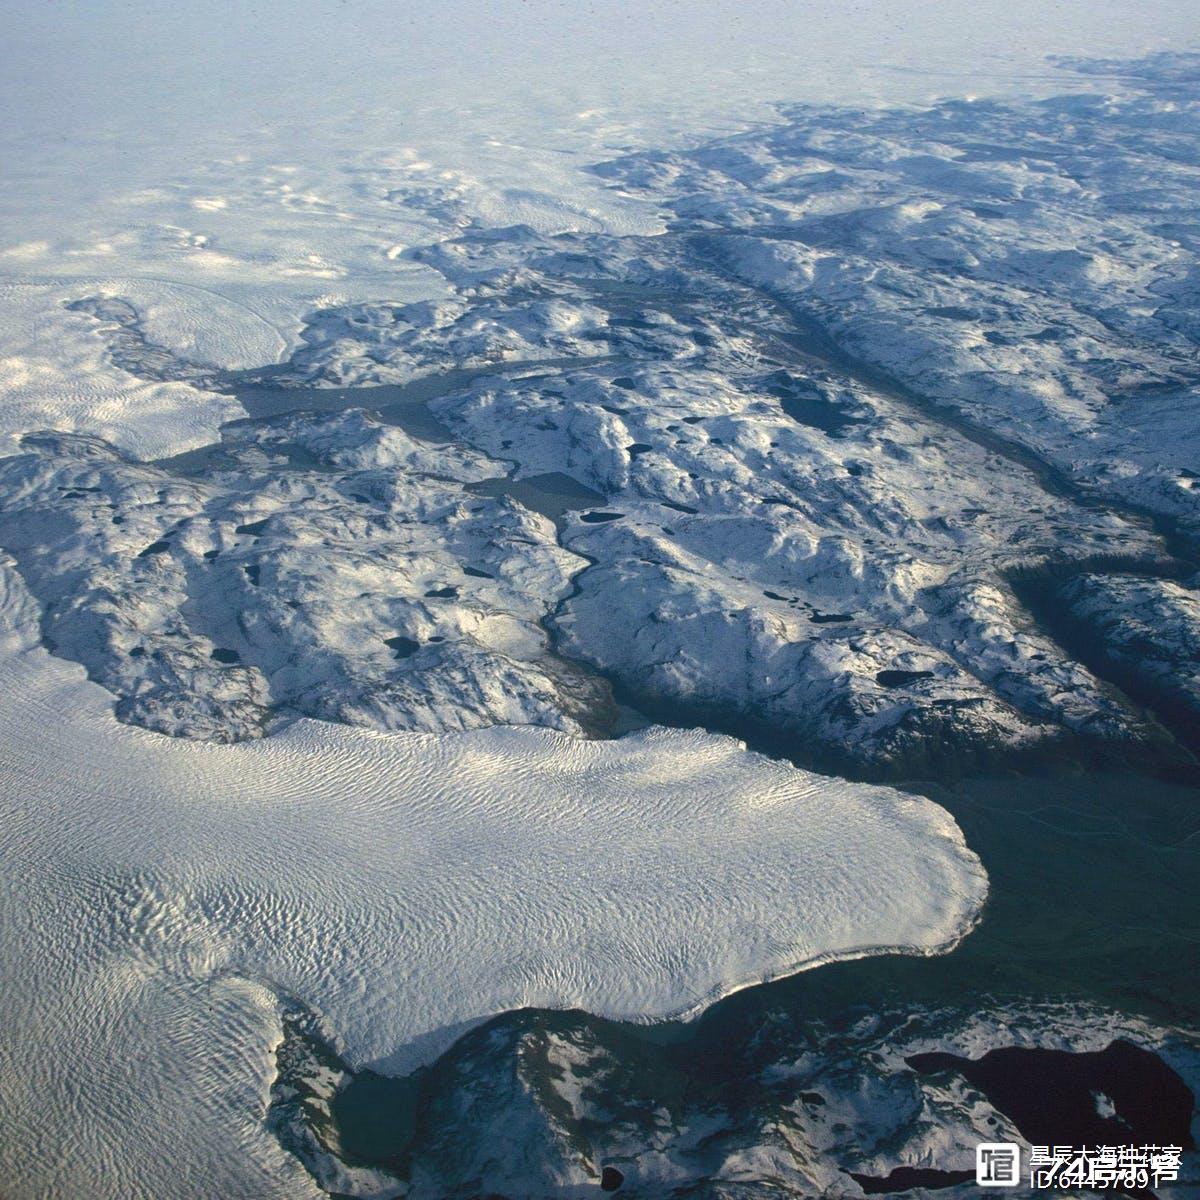 47000亿吨冰已经融化，可淹没全美国近0.5米，地球究竟会变怎样？